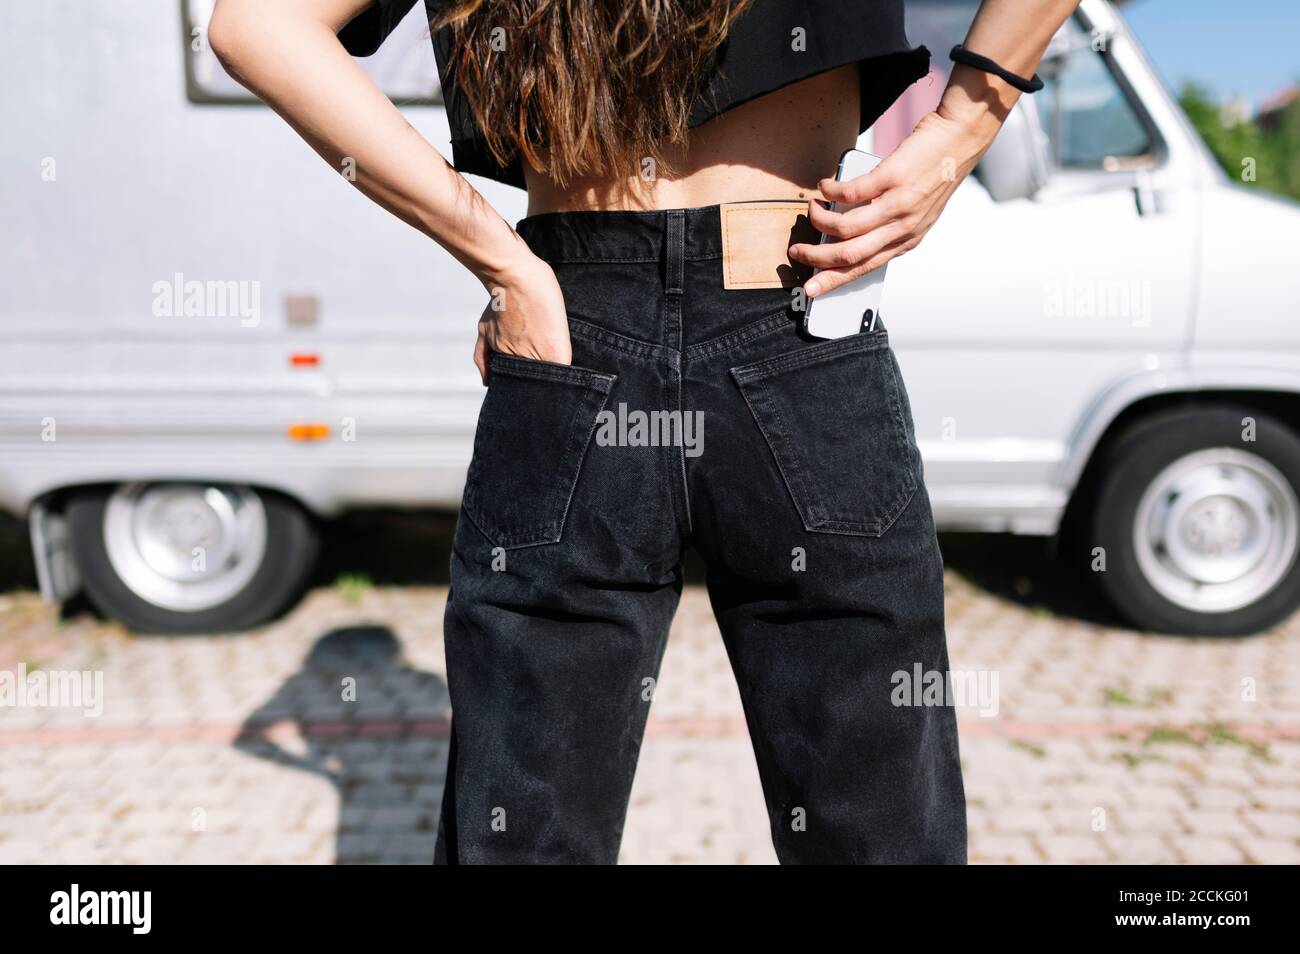 Jeune femme mettant un smartphone dans la poche de son pantalon Banque D'Images